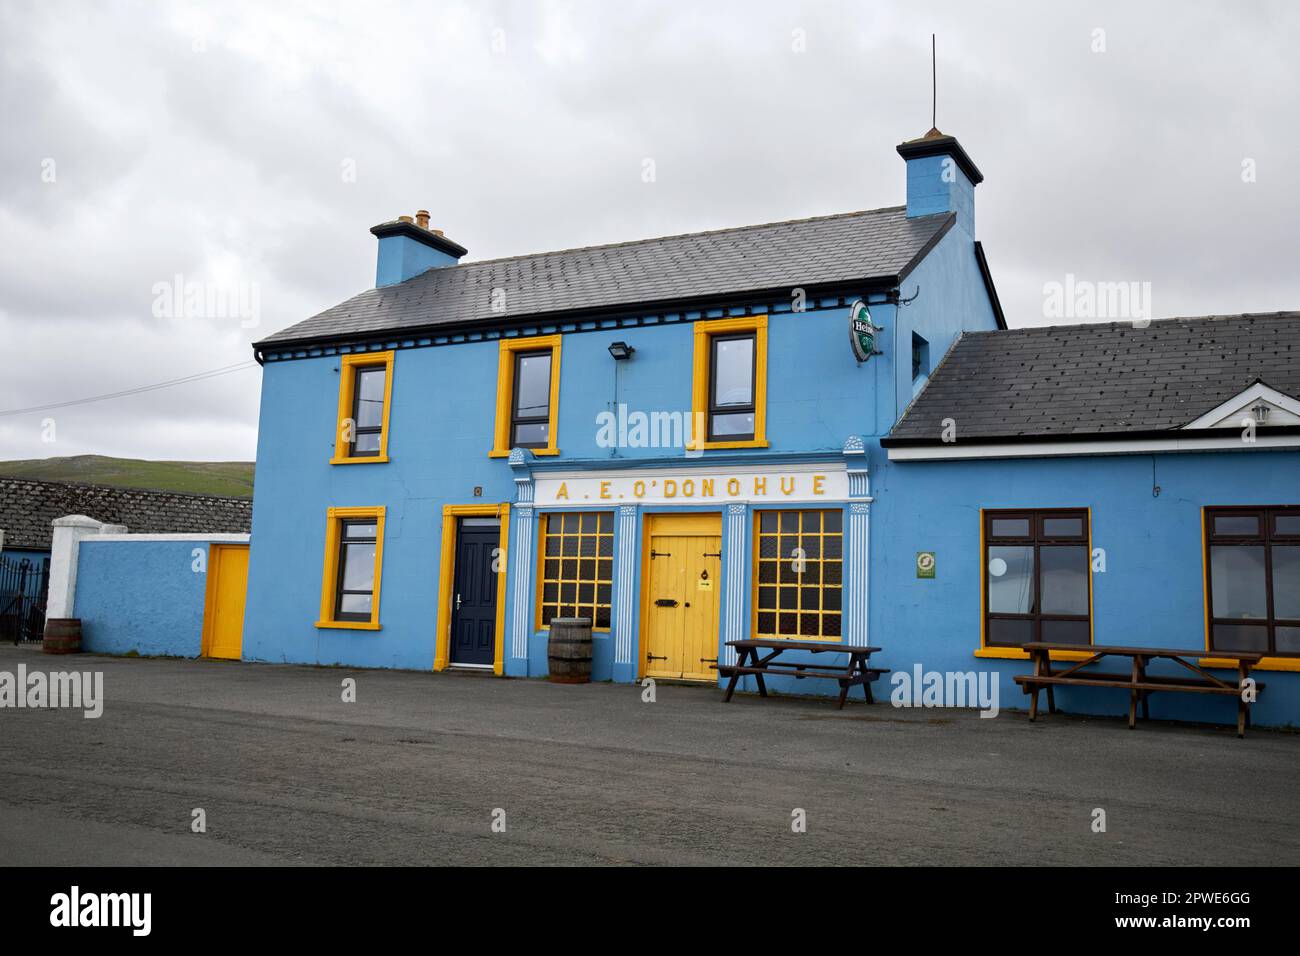 a.e. odonohue pub in fanore beg county clare republic of ireland Stock Photo